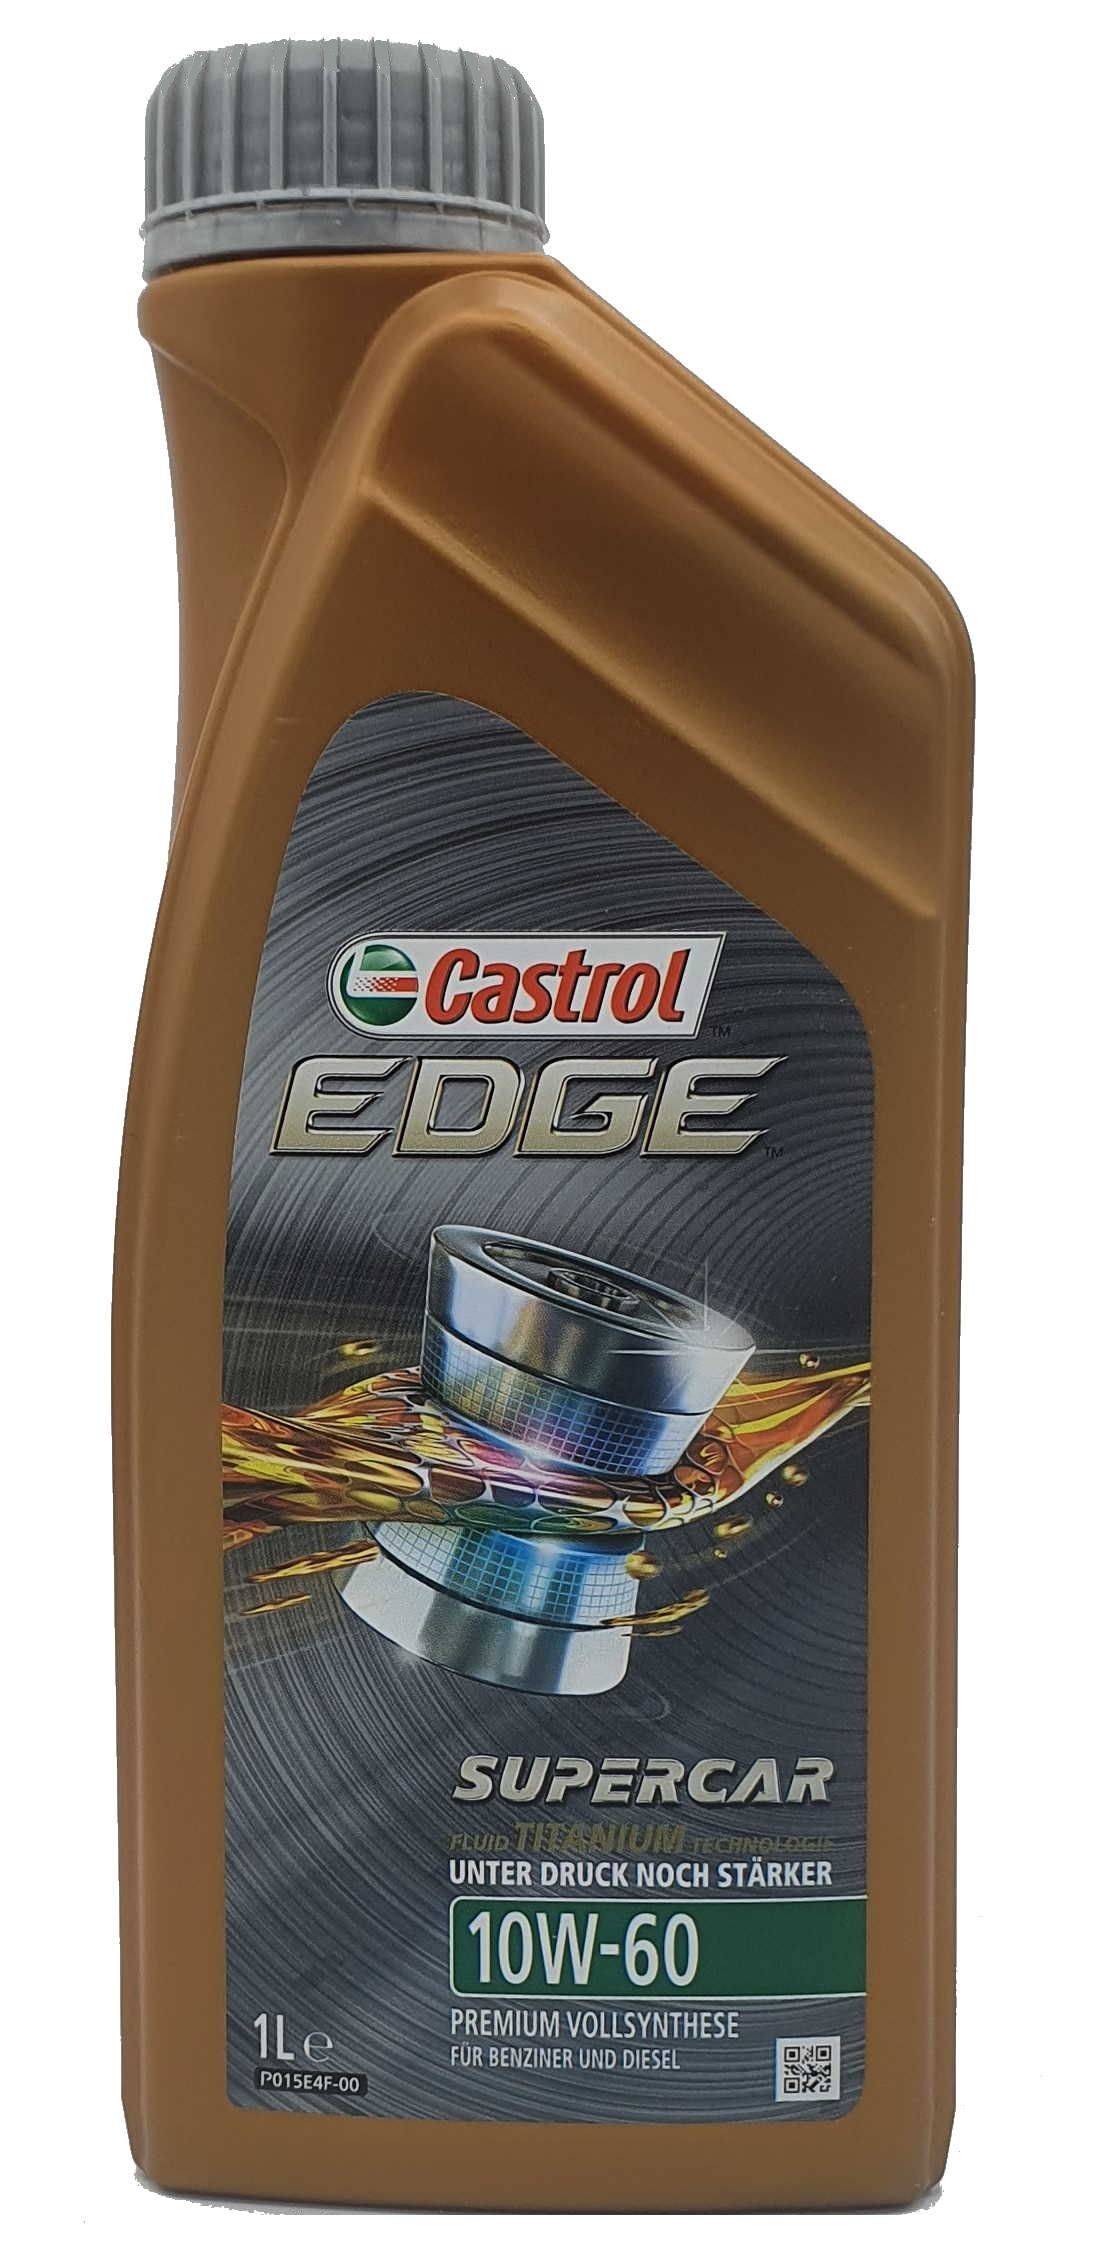 Castrol Edge Fluid Titanium Supercar 10W-60 1 Liter